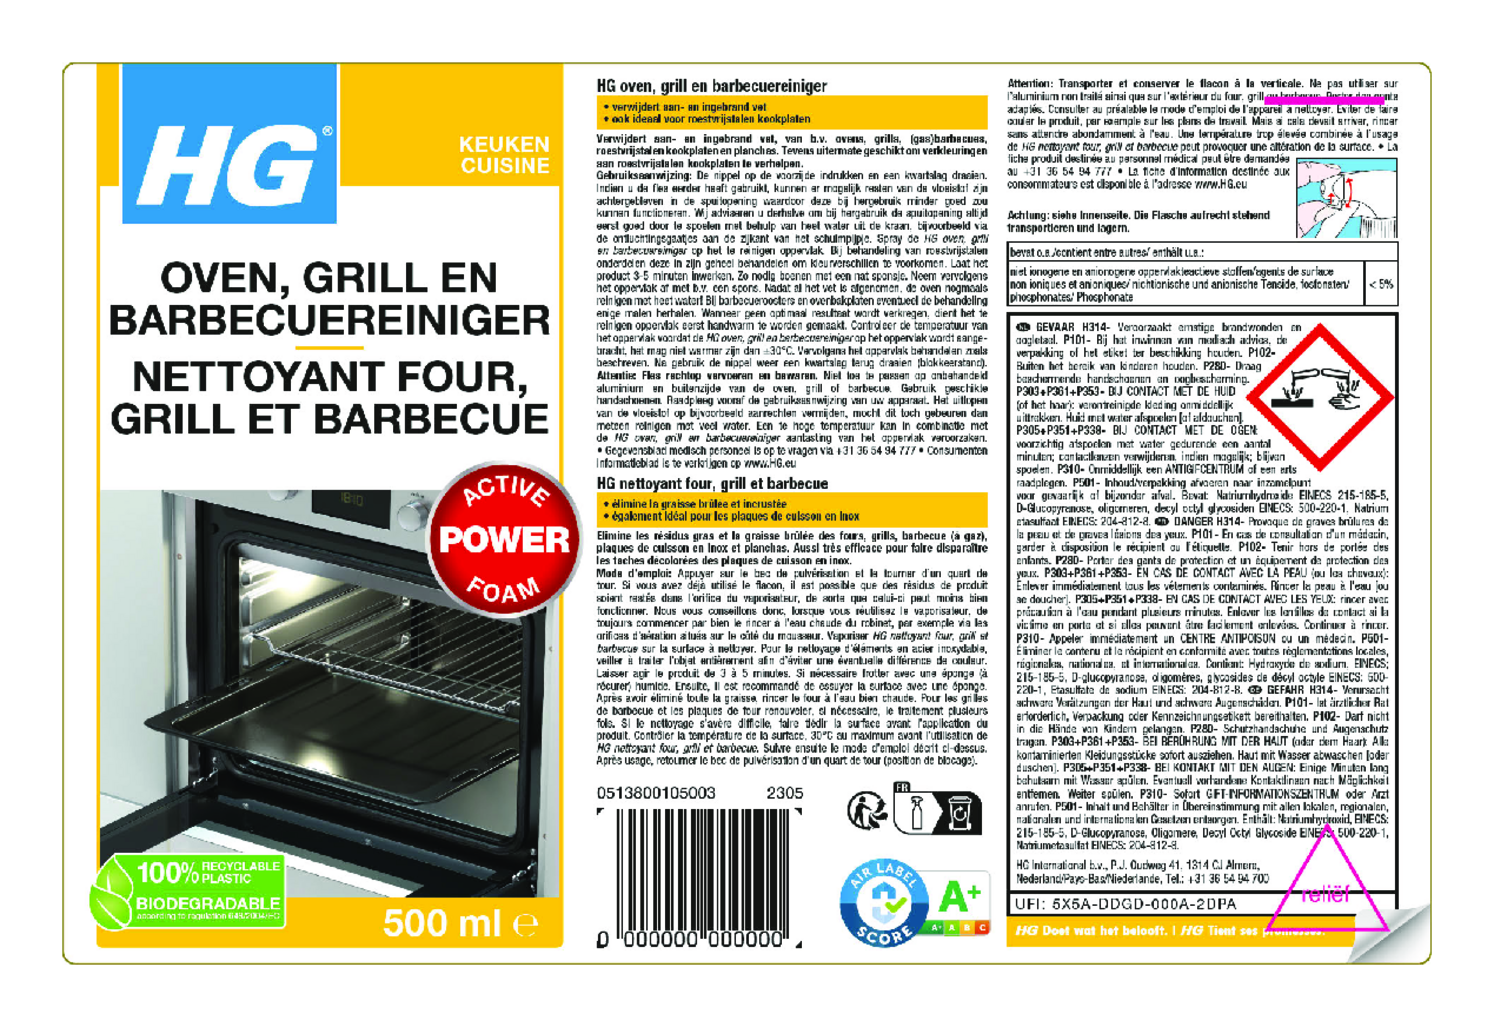 Keuken Oven, Grill en Barbecue Reiniger afbeelding van document #1, etiket